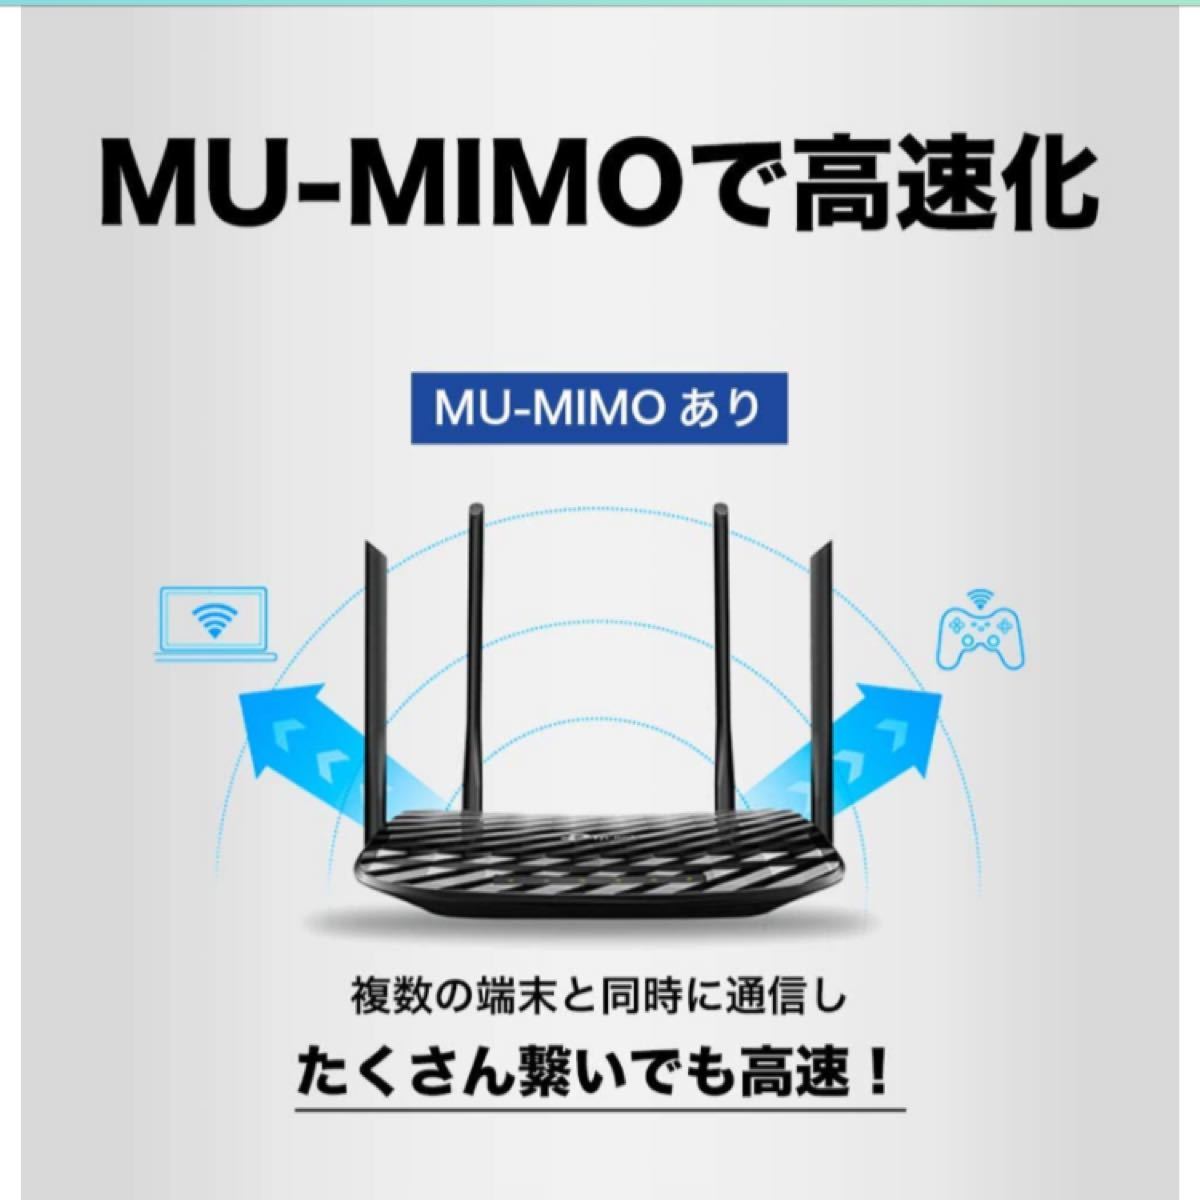 TP-Link WiFi 無線LAN ルーター 11ac MU-MIMO